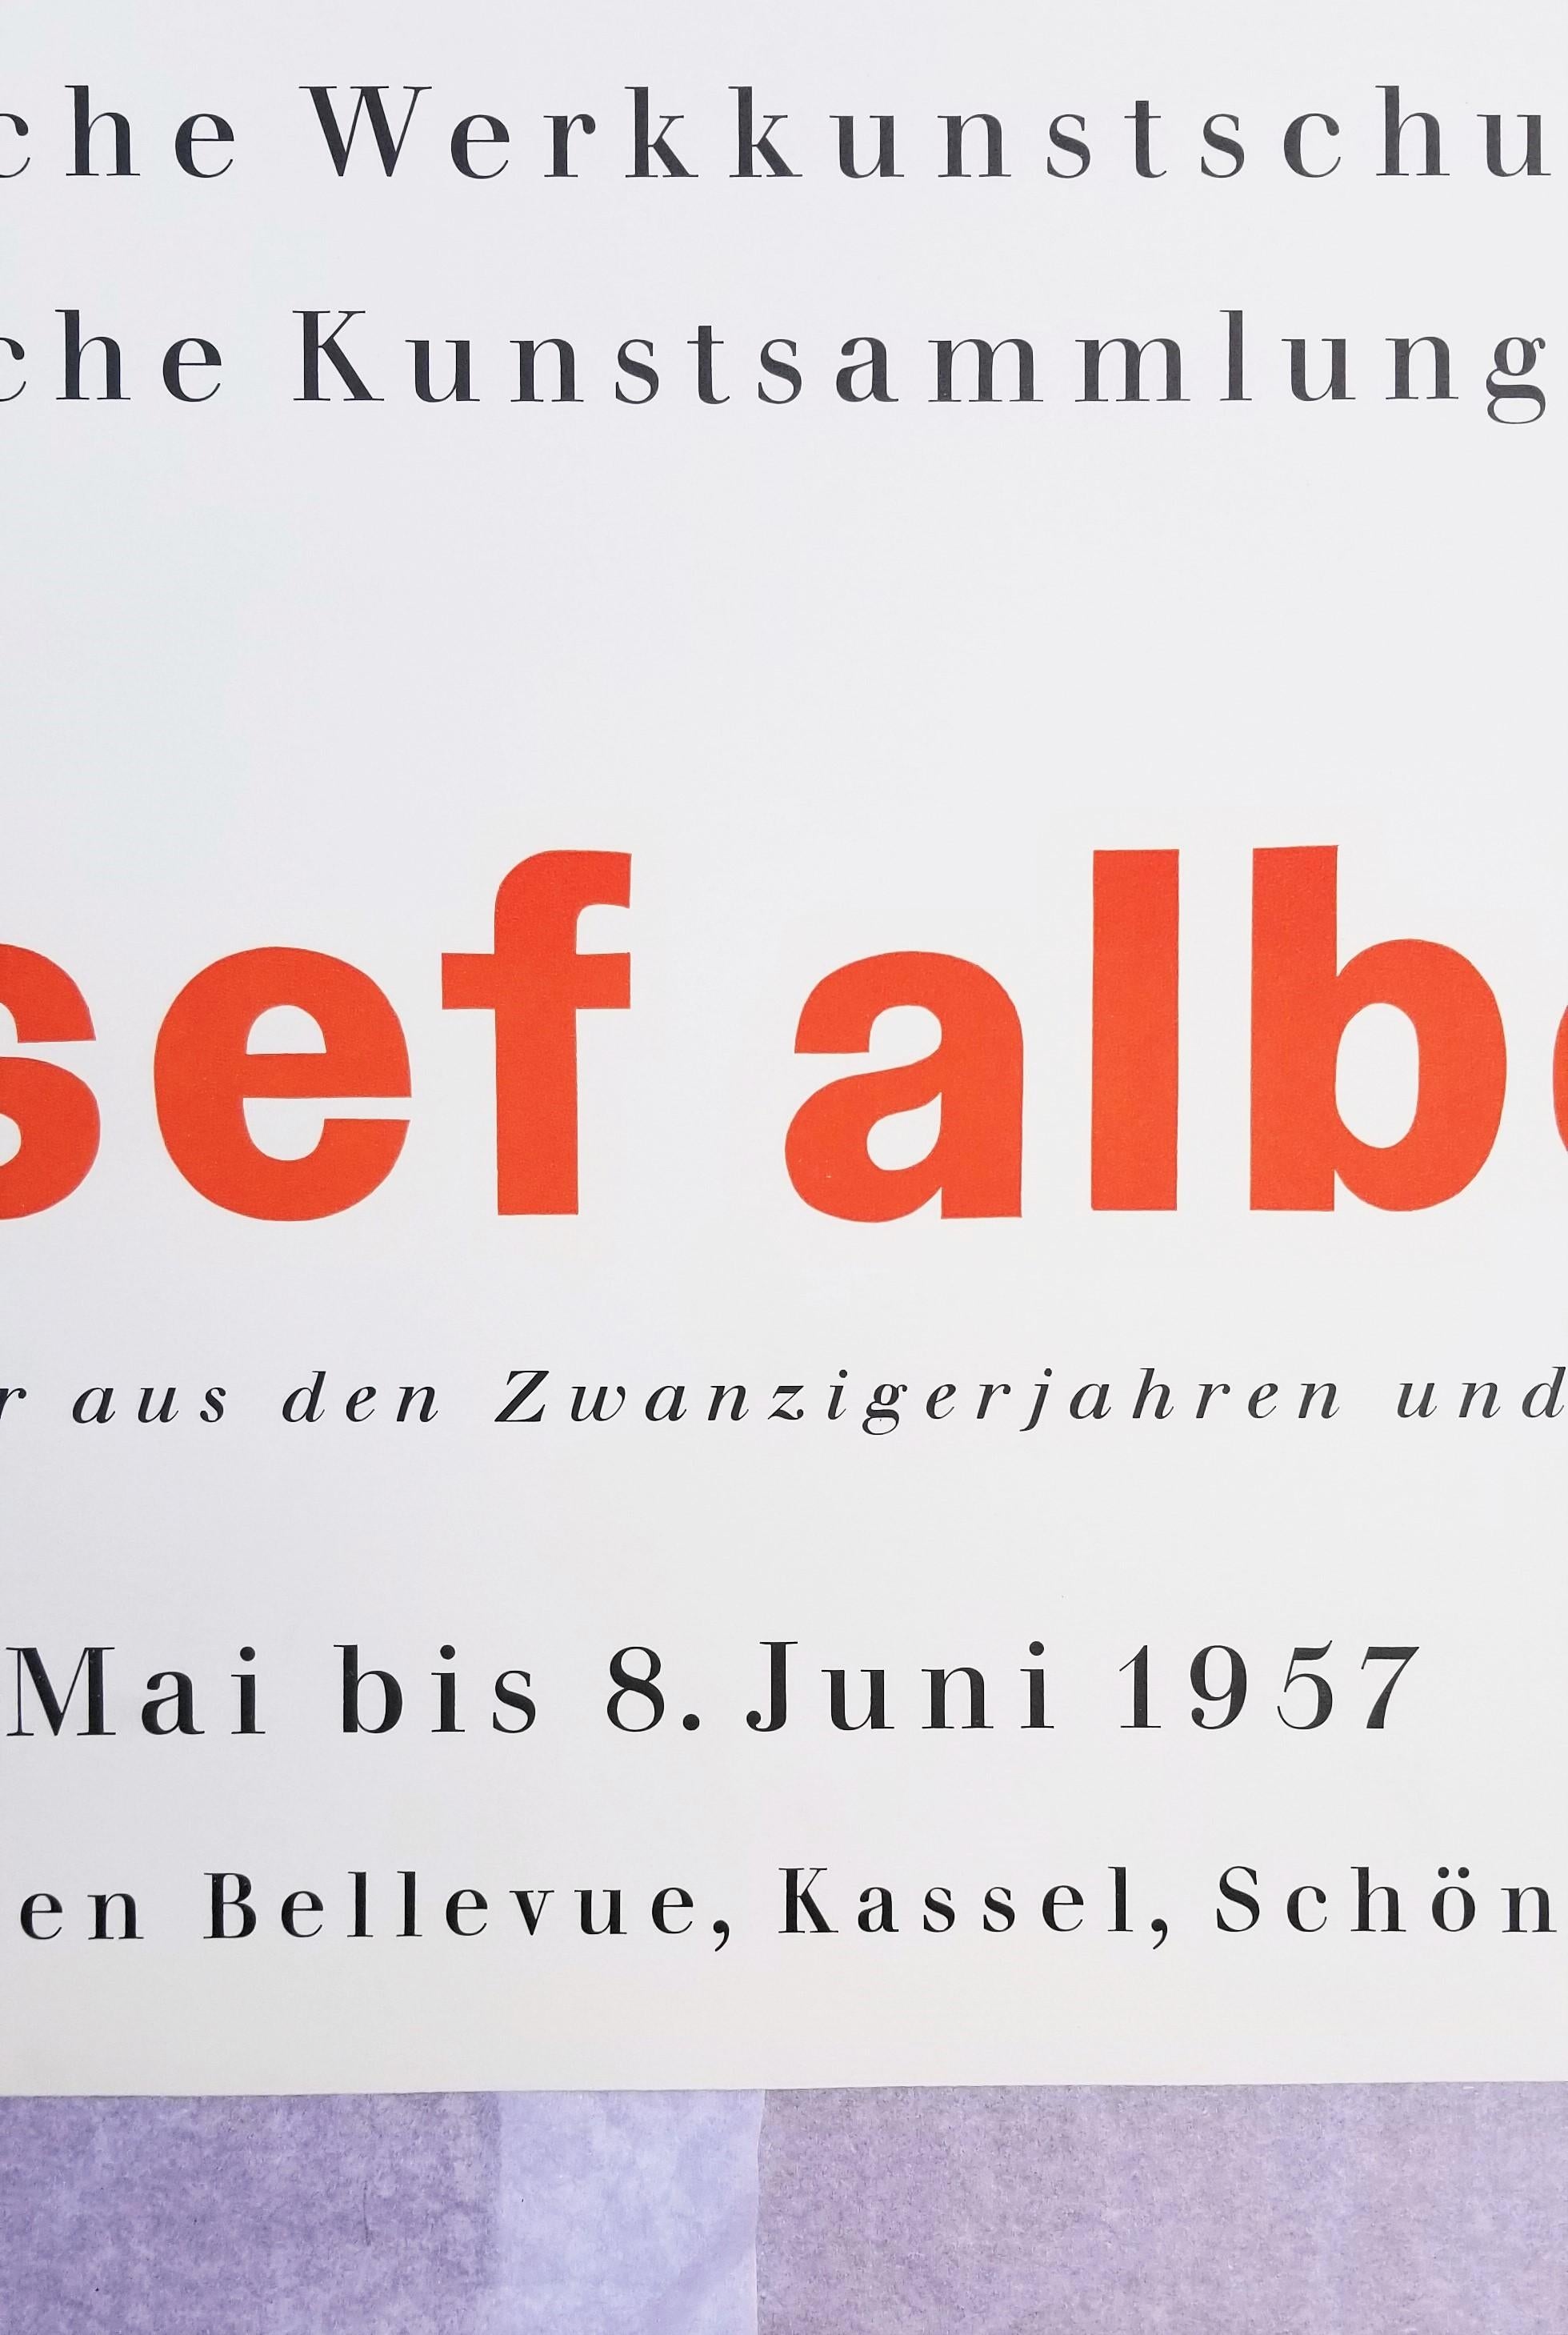 Staatliche Werkkunstschule Kassel (Prefatio) Poster /// Bauhaus Josef Albers Art For Sale 5